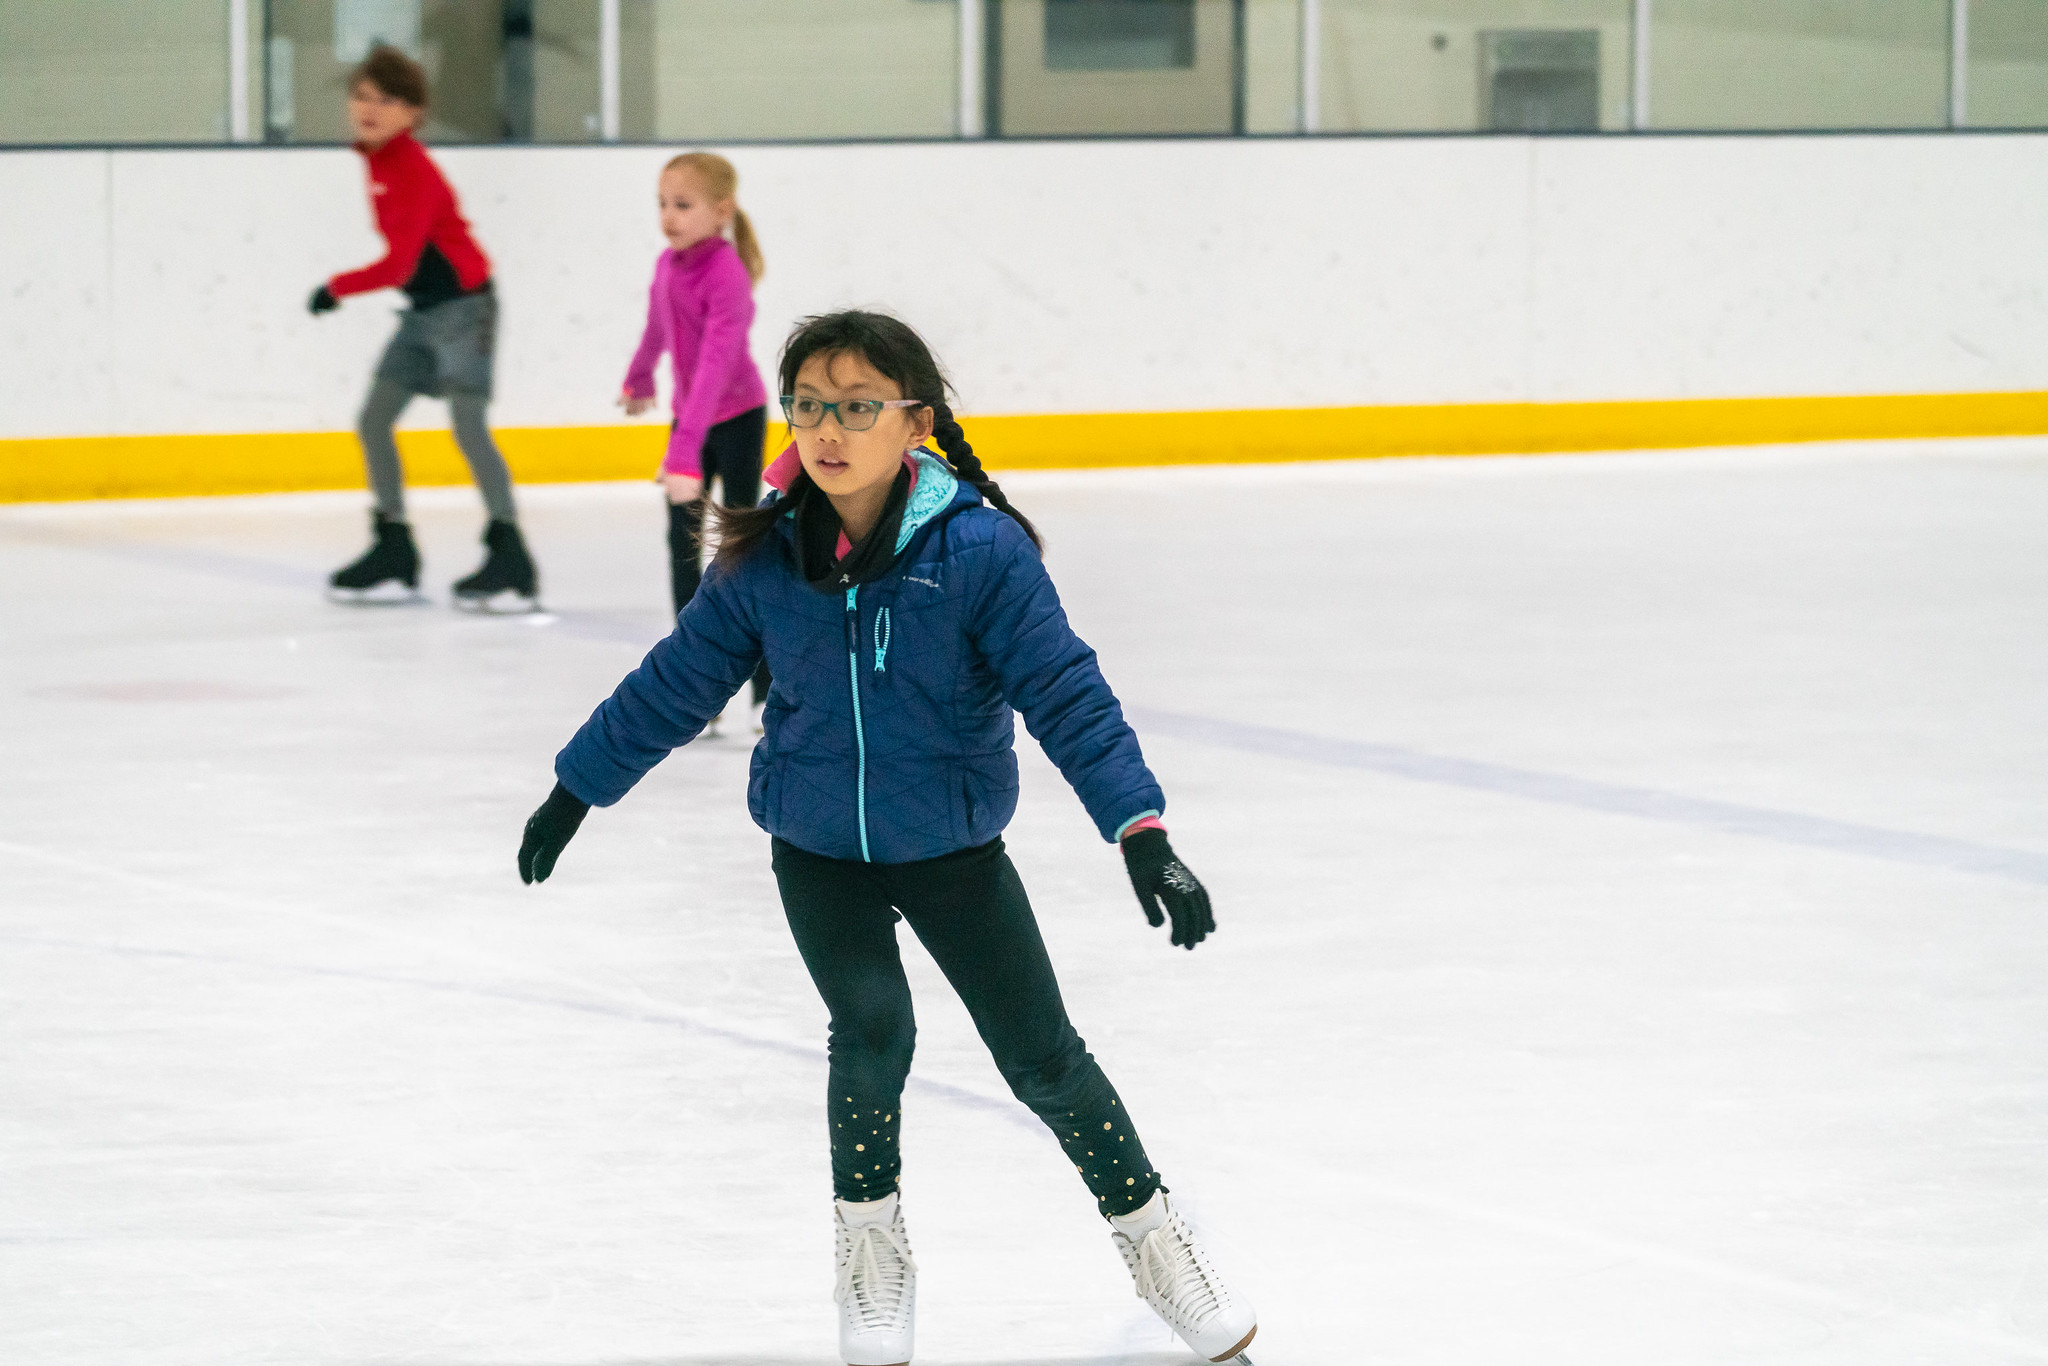 child skating backward